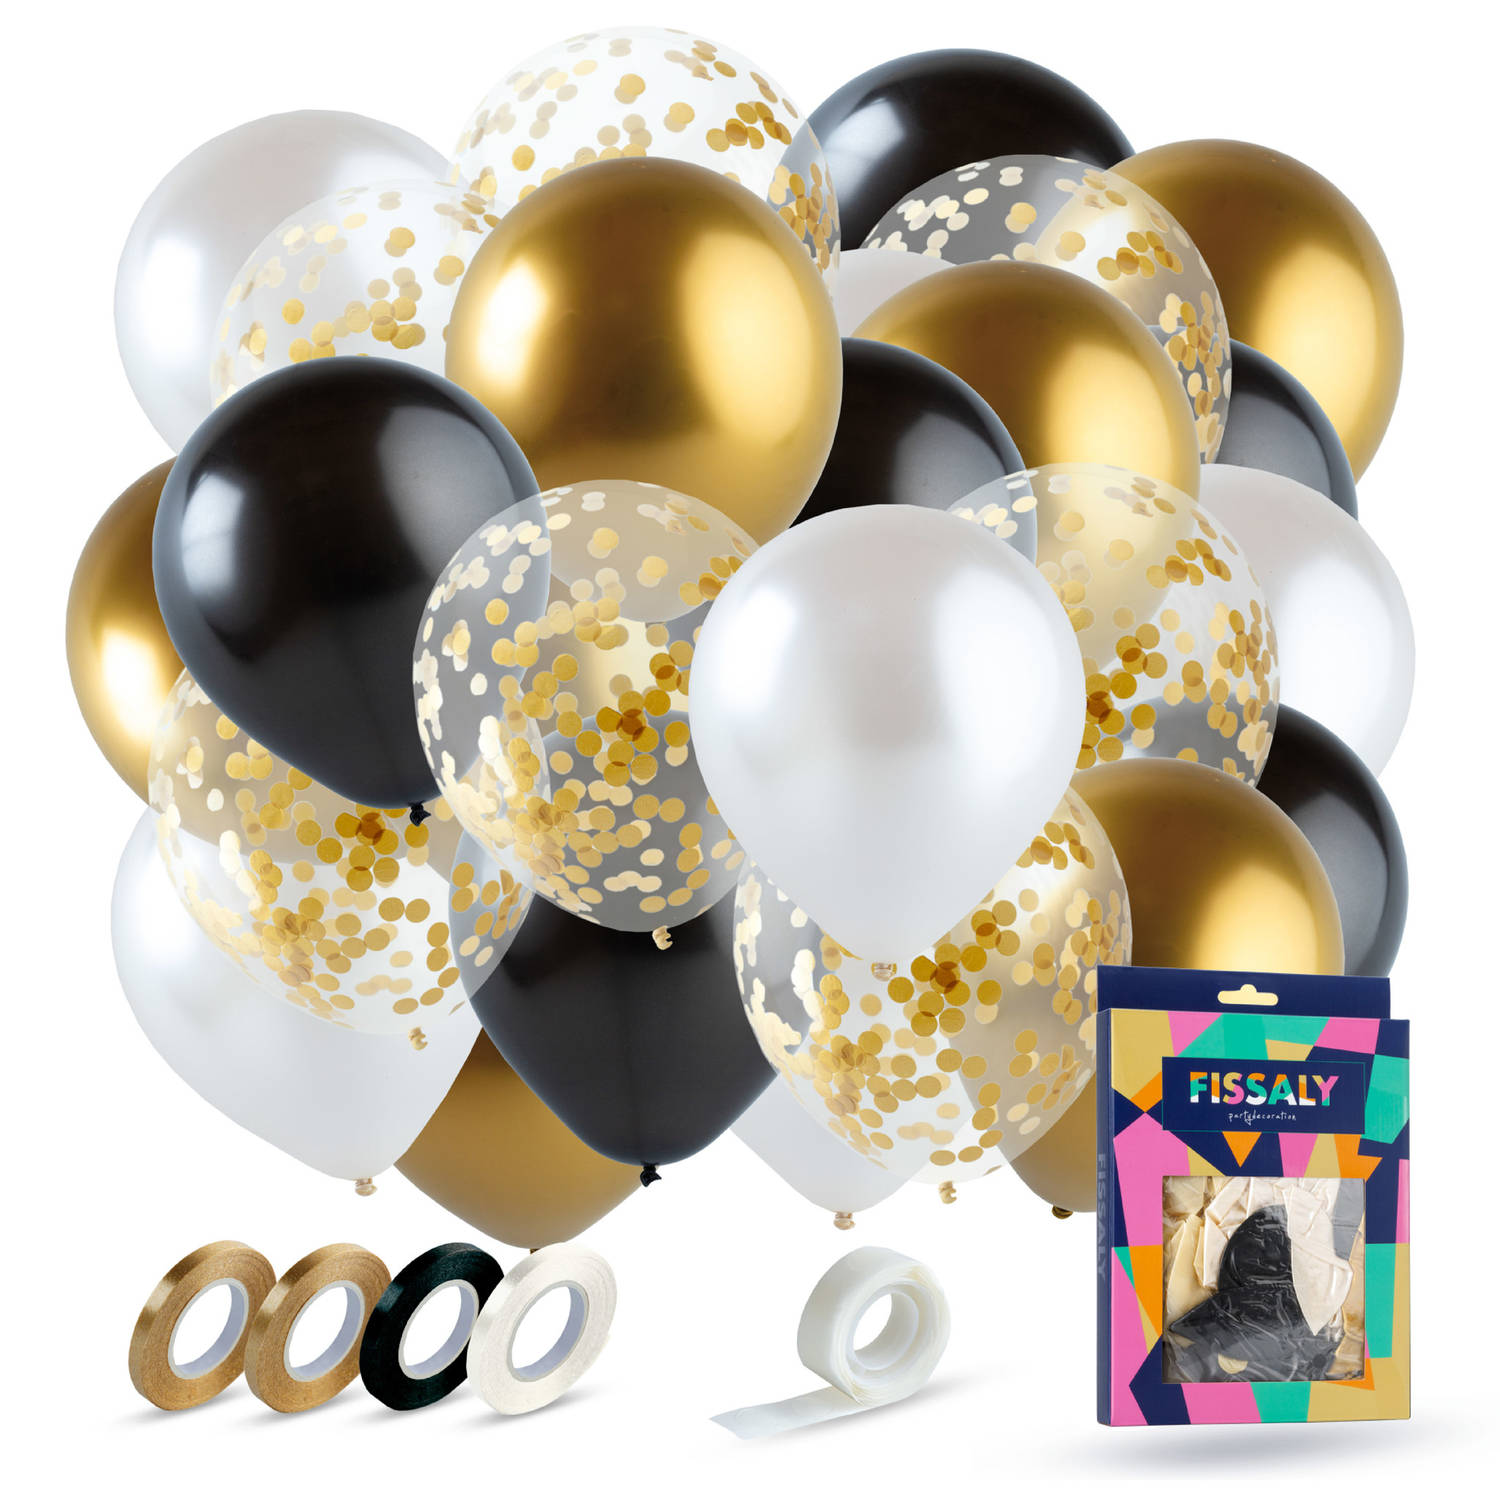 Fissaly® 40 stuks Goud, Zwart & Wit Helium Ballonnen met Lint - Versiering Decoratie - Papieren Confetti - Latex